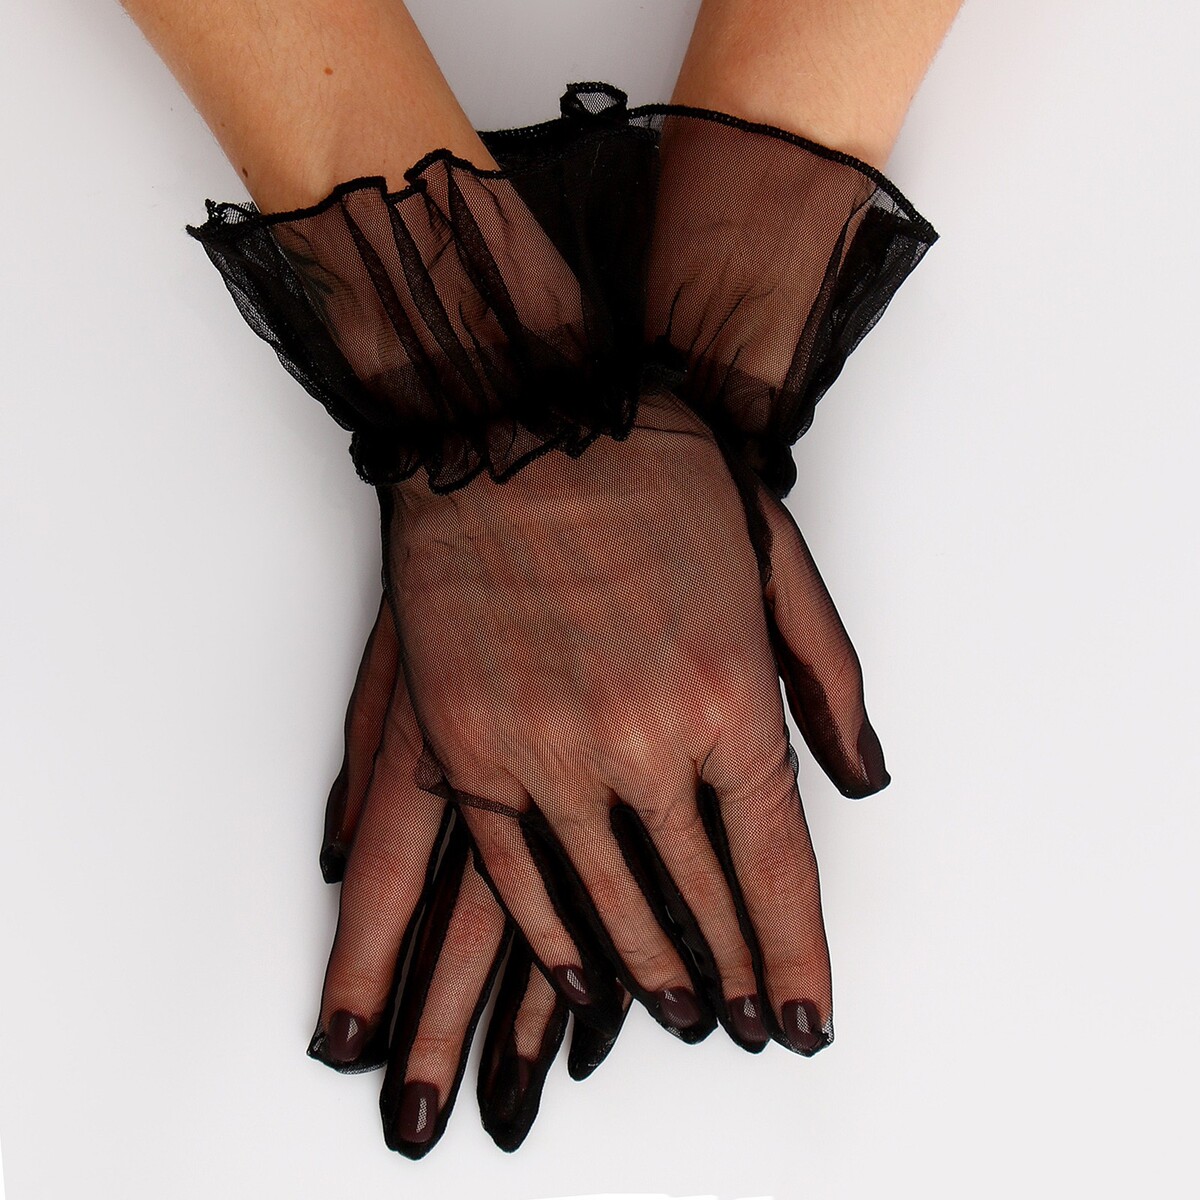 Карнавальный аксессуар - перчатки прозрачные с юбочкой, цвет черный карнавальный аксессуар перчатки прозрачные с юбочкой белый